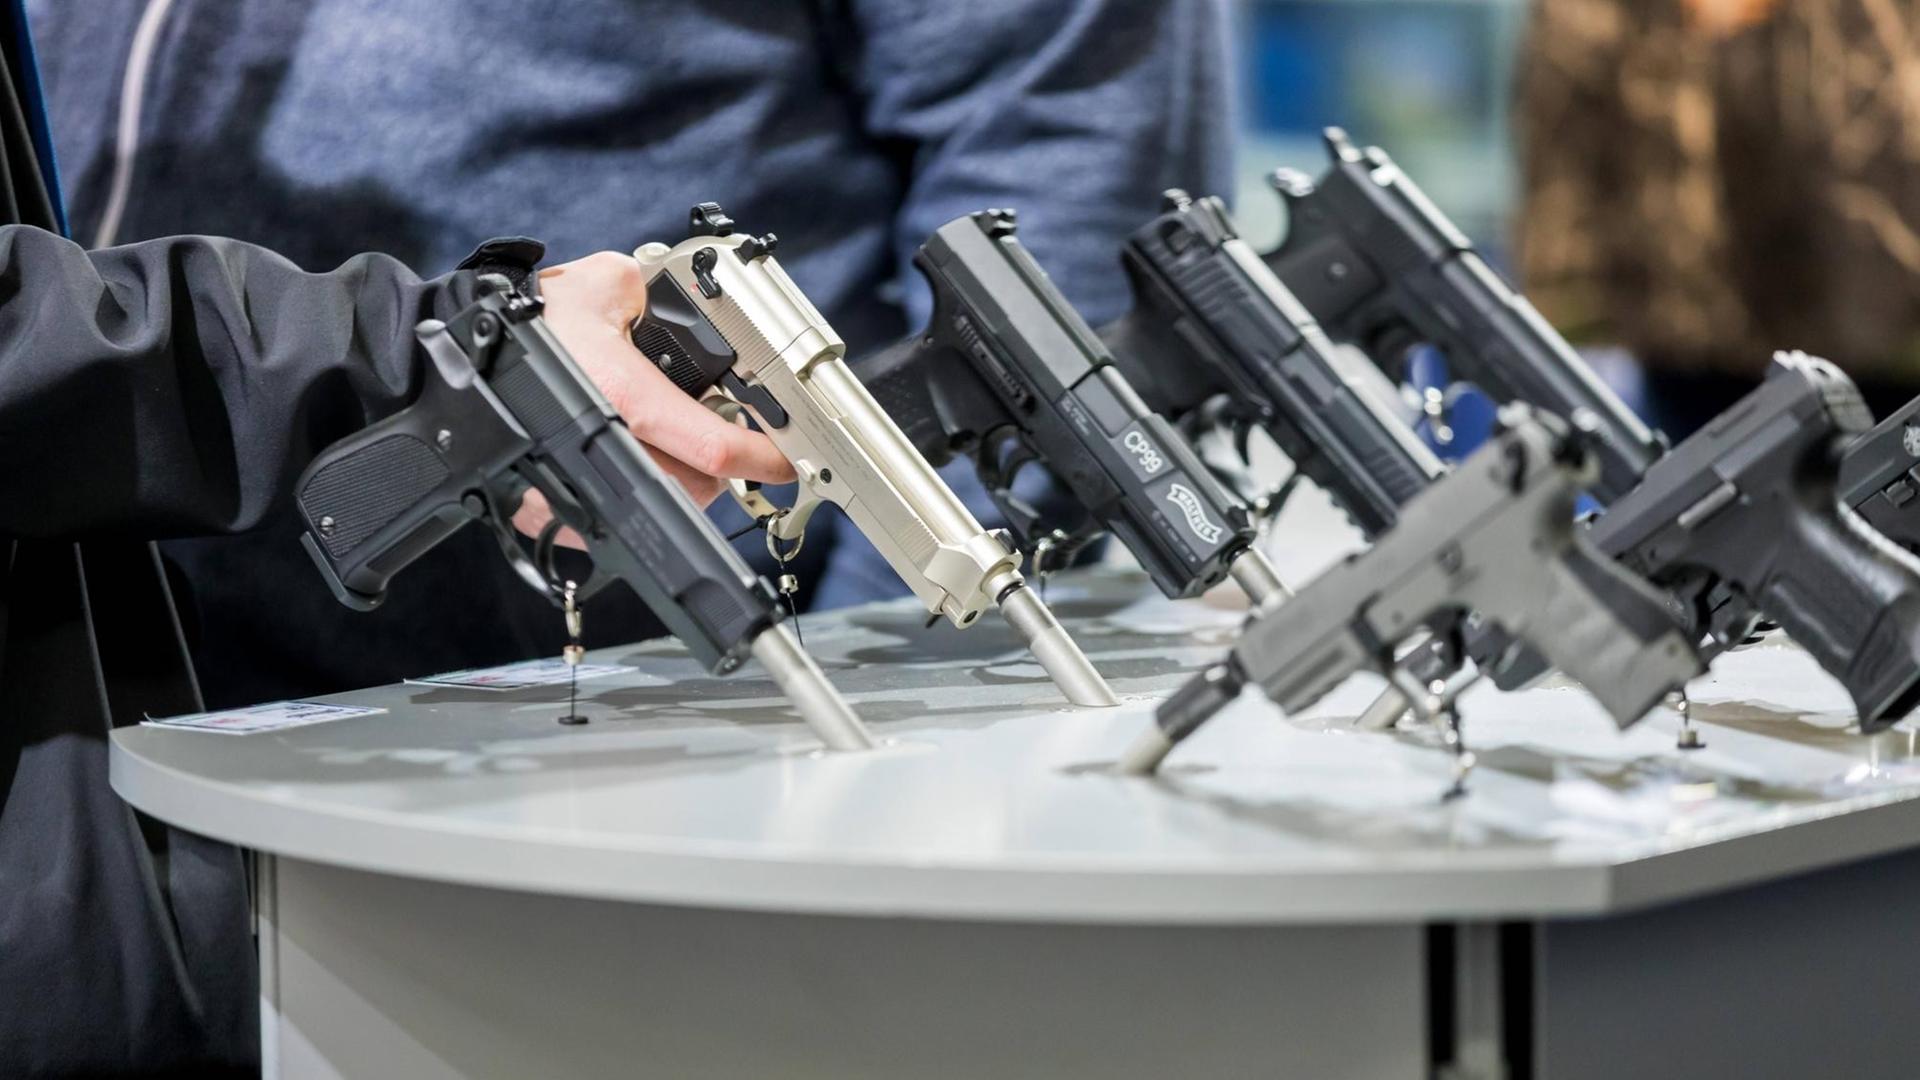 Februar 2018: Auf der Messe "Jagd & Hund" in den Dortmunder Westfalenhallen sind auf einem Tisch mehrere Pistolen ausgestellt. Jemand umschließt eine davon mit der Hand.